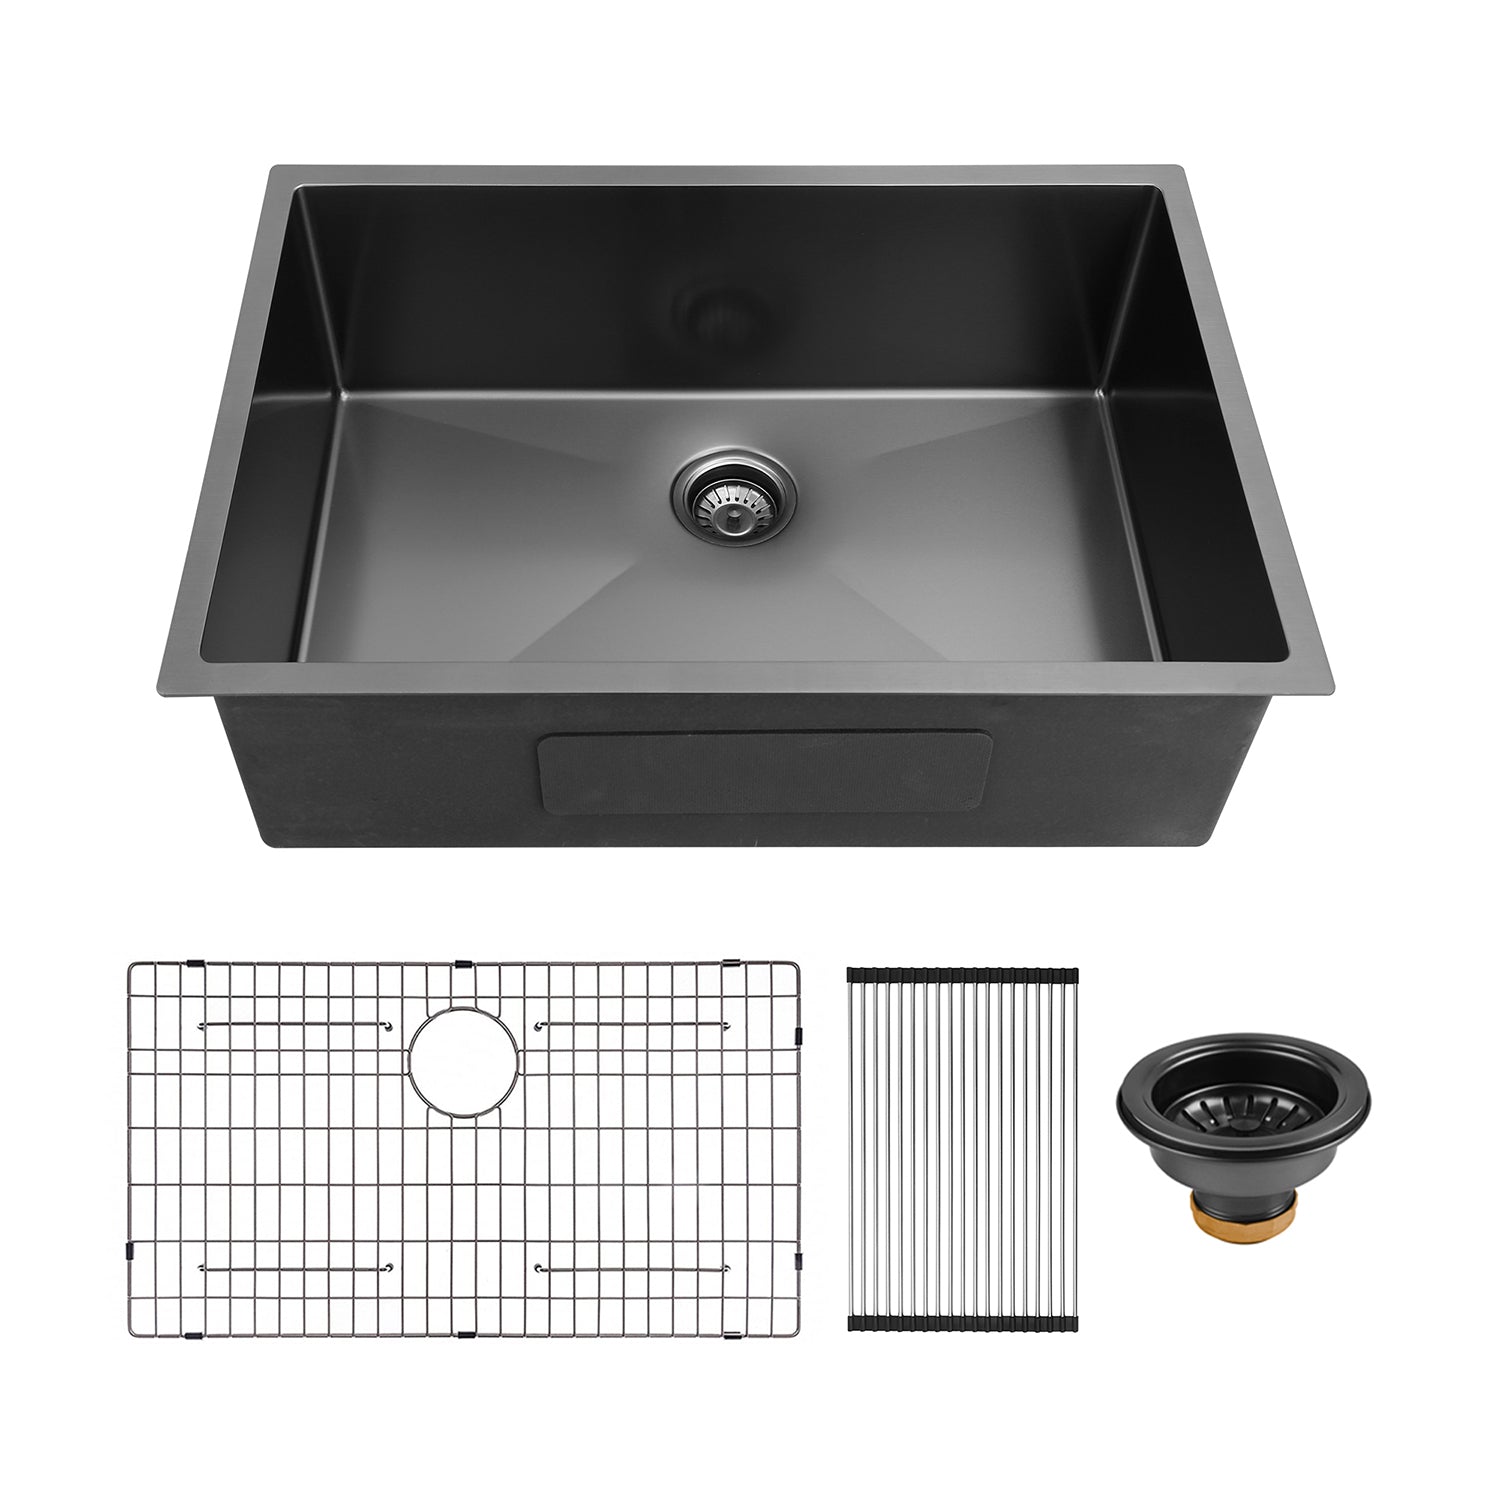 30" x 21"Undermount Kitchen Sink 16 Gauge Stainless Steel Single Bowl Kitchen Sink Gunmetal Black